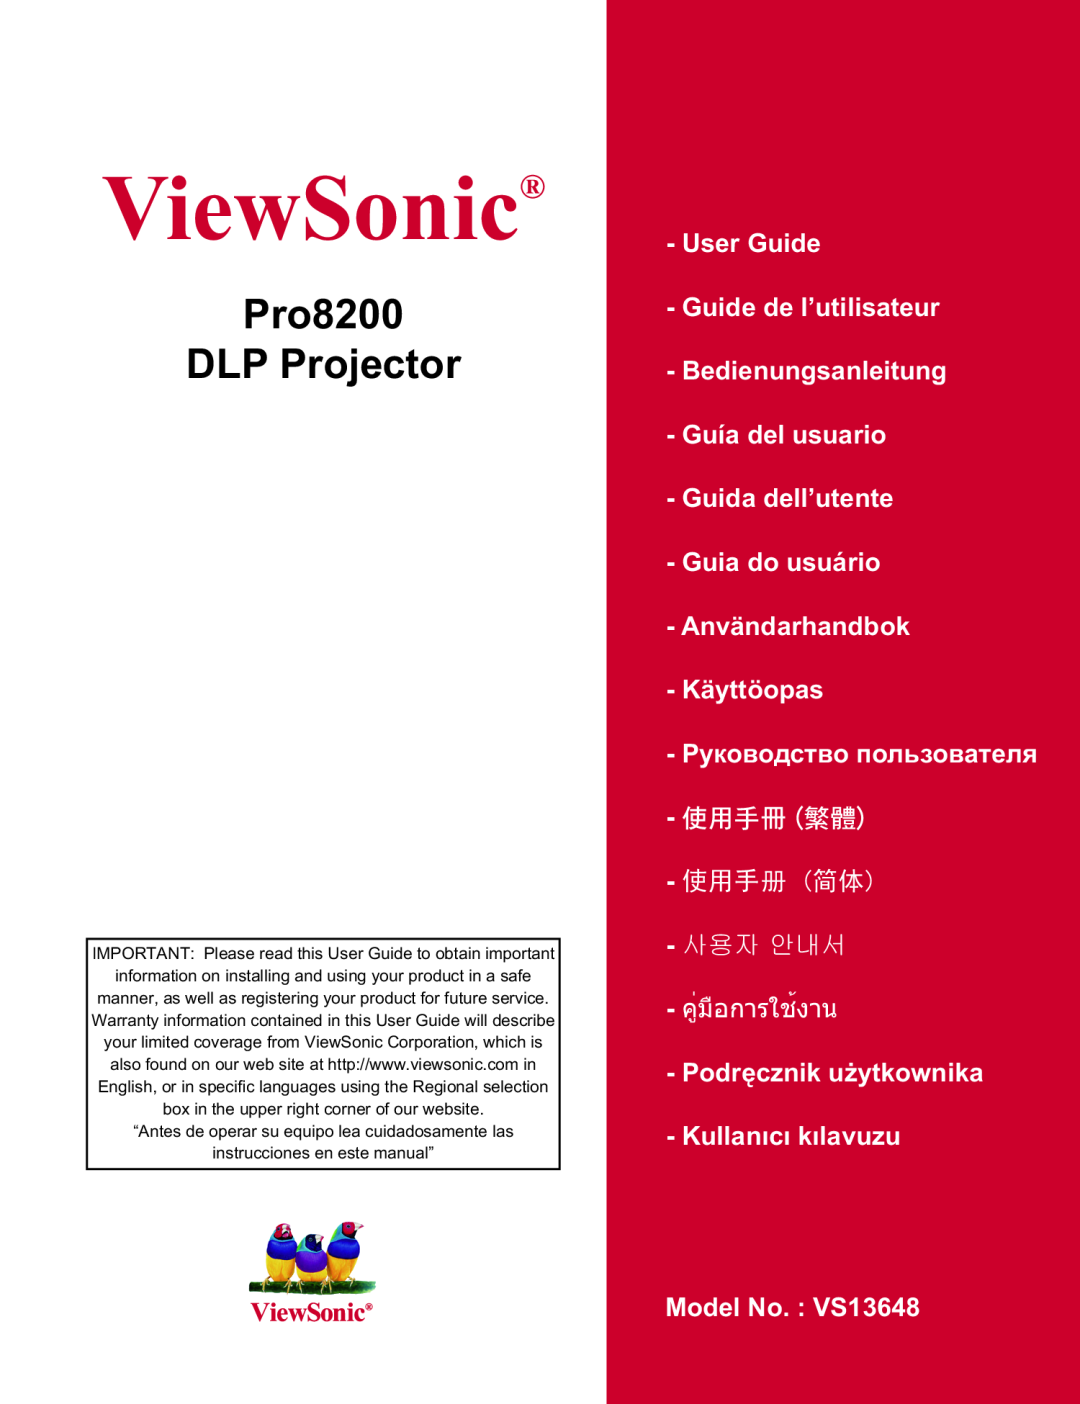 ViewSonic PRO8200 warranty Pro8200 DLP Projector, ViewSonic, User Guide Guide de l’utilisateur, зѬѷєѪѠдѥіѲнѸкѥь 